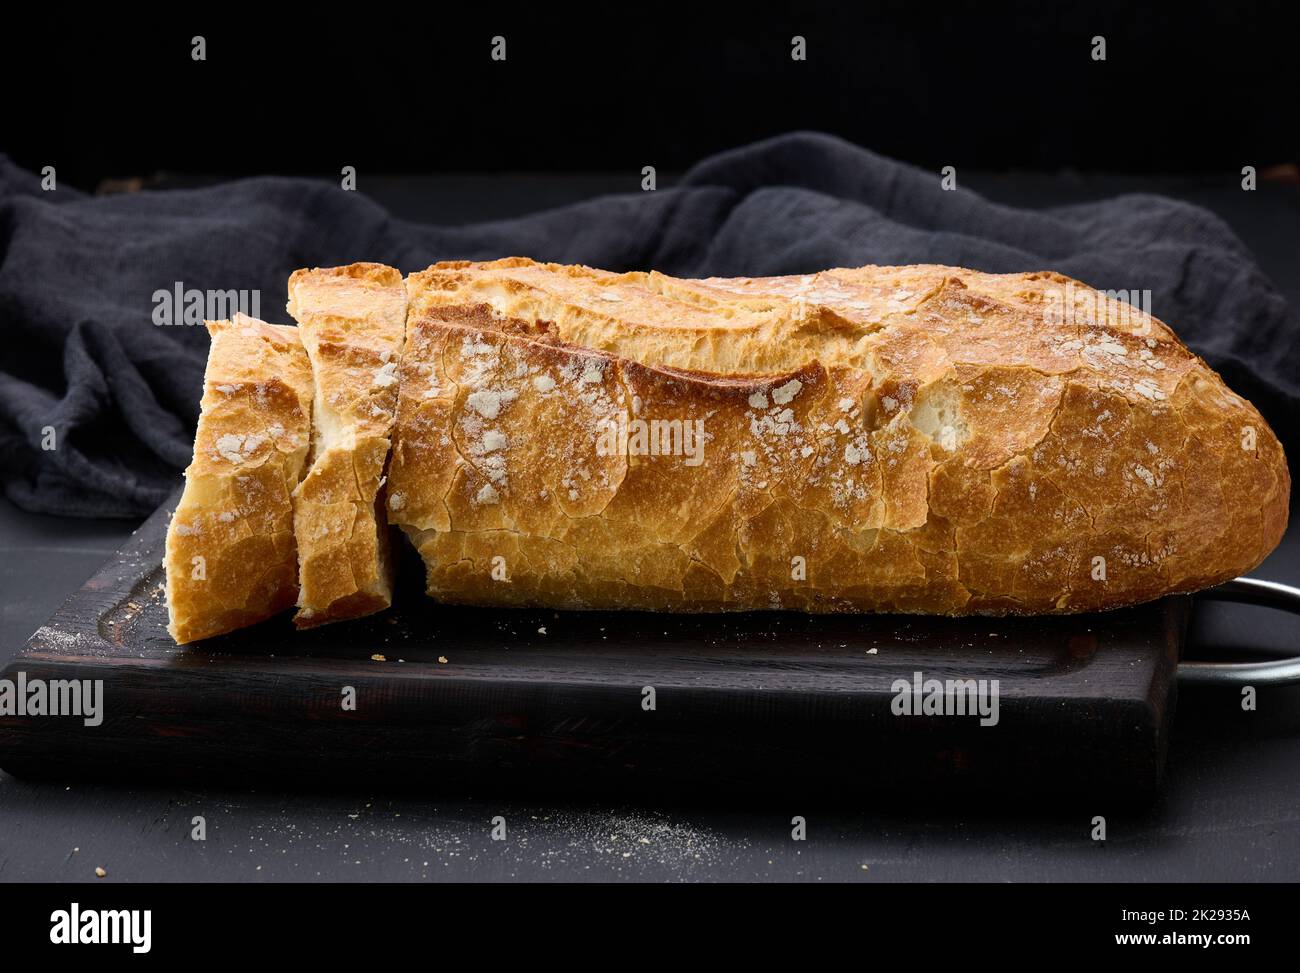 pain ovale entier cuit à la farine de blé blanc sur une table noire, pâtisseries fraîches Banque D'Images